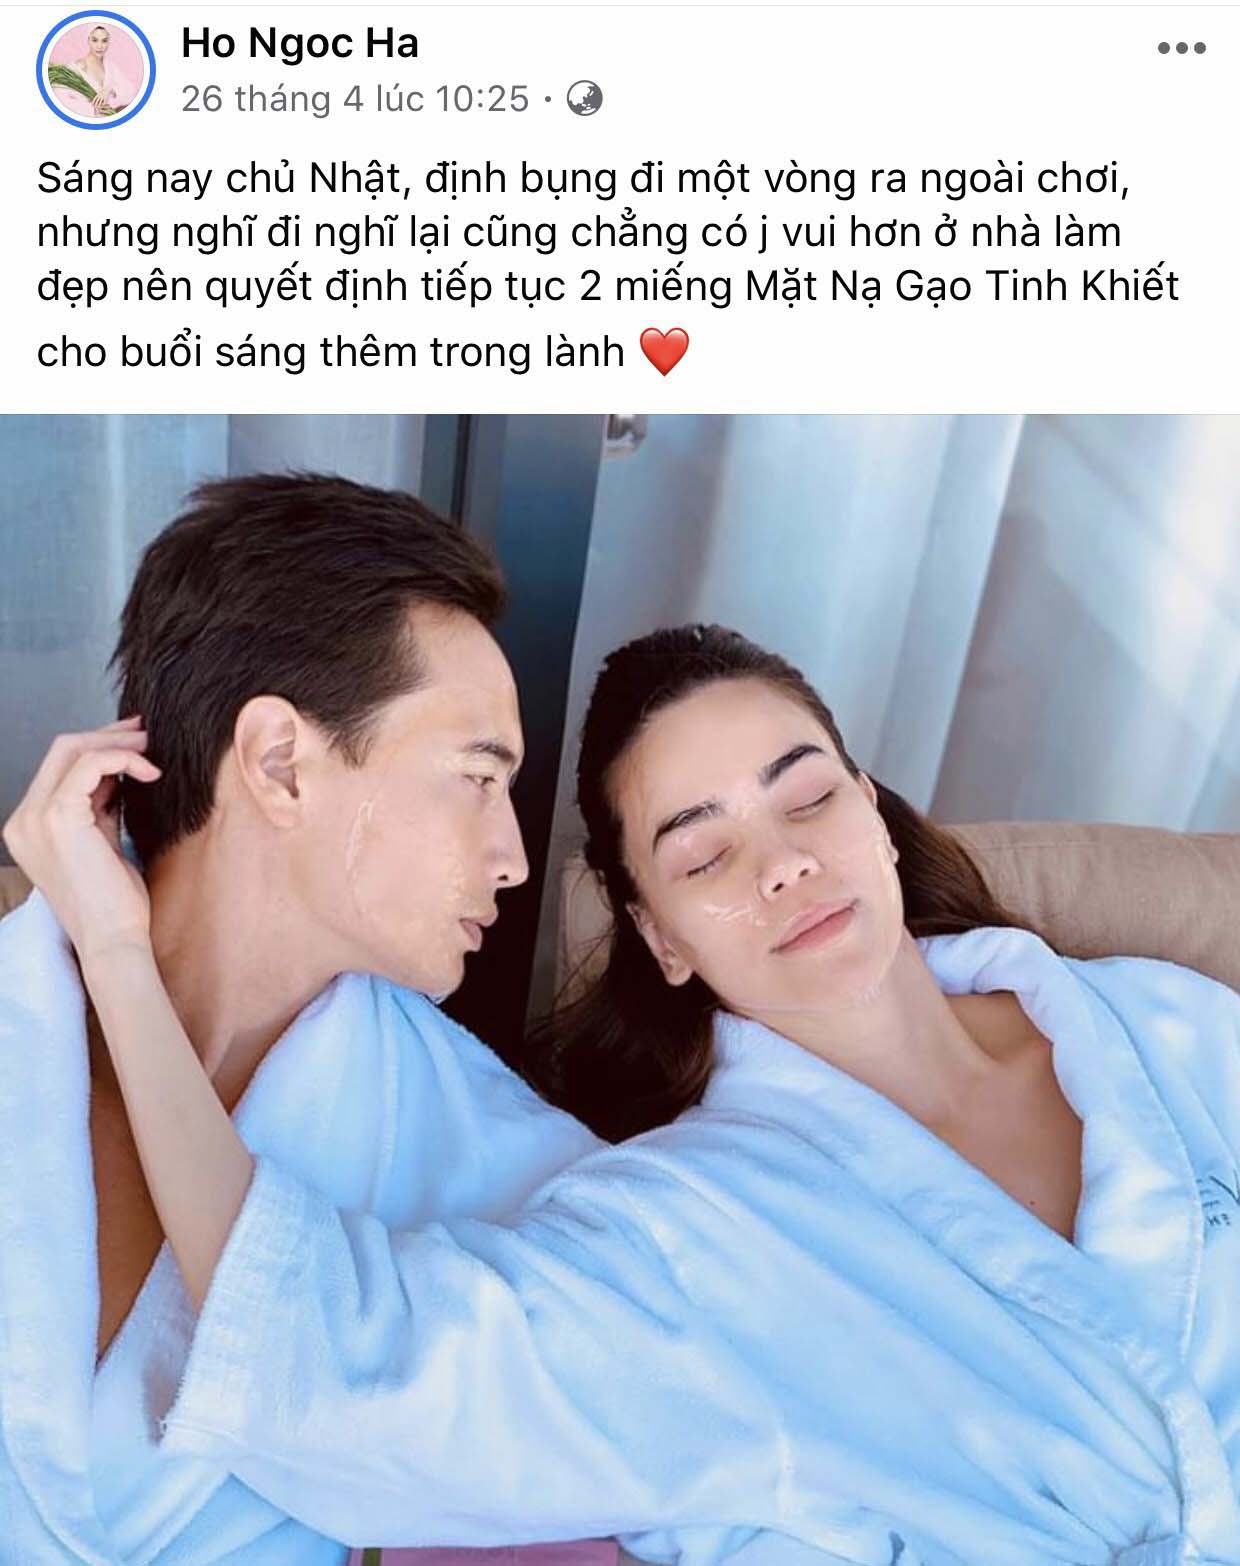 Chuyên mục GATO: Khi các cặp đôi sao Việt “tình bể bình” chăm sóc da cho nhau - 1